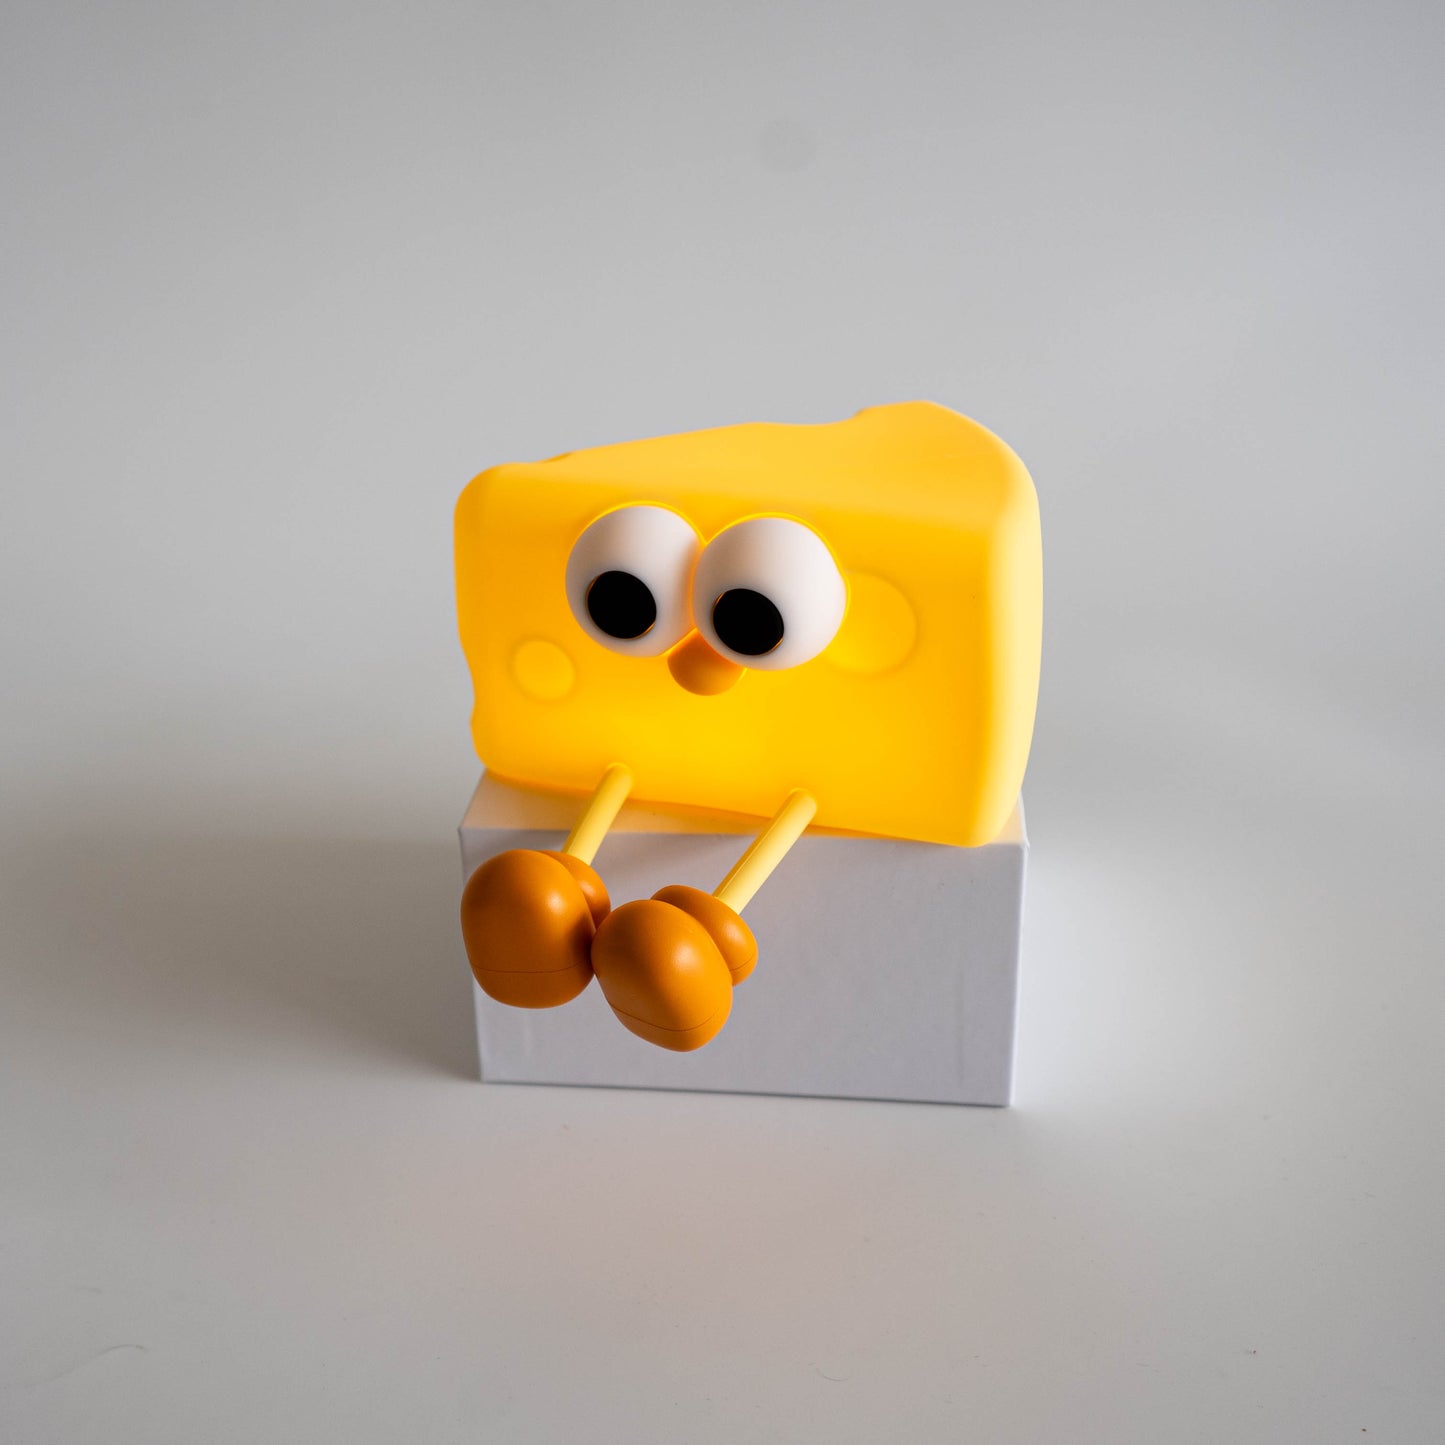 Cheese Lamp